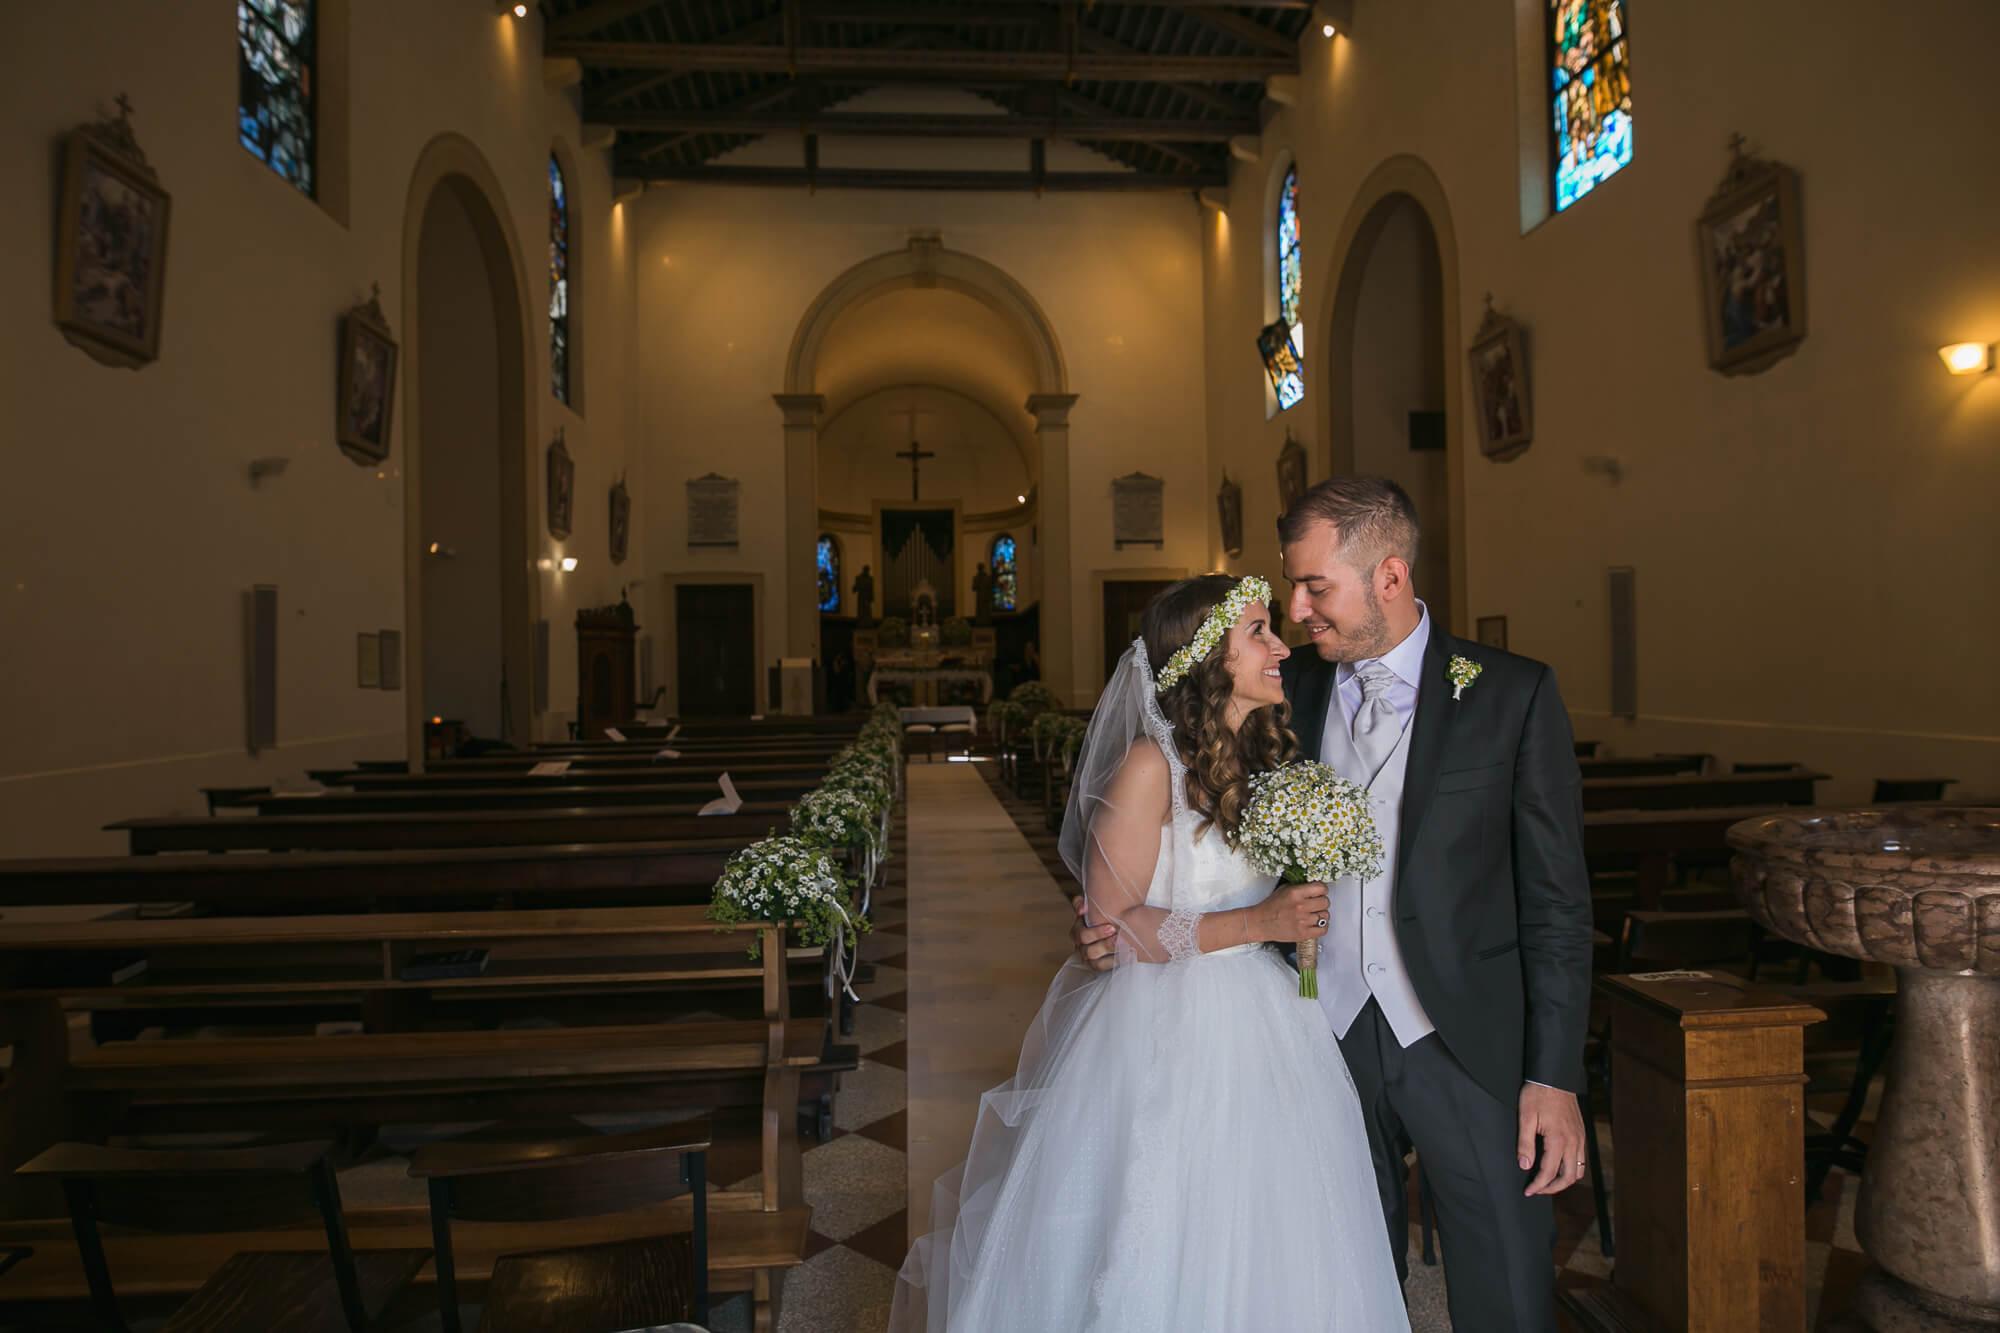 Servizio fotografico di matrimonio a Sacile, Villa Brandolini d'Adda. Serena e Luca sposi. Michelino Studio, fotografi di matrimonio professionisti in Veneto.